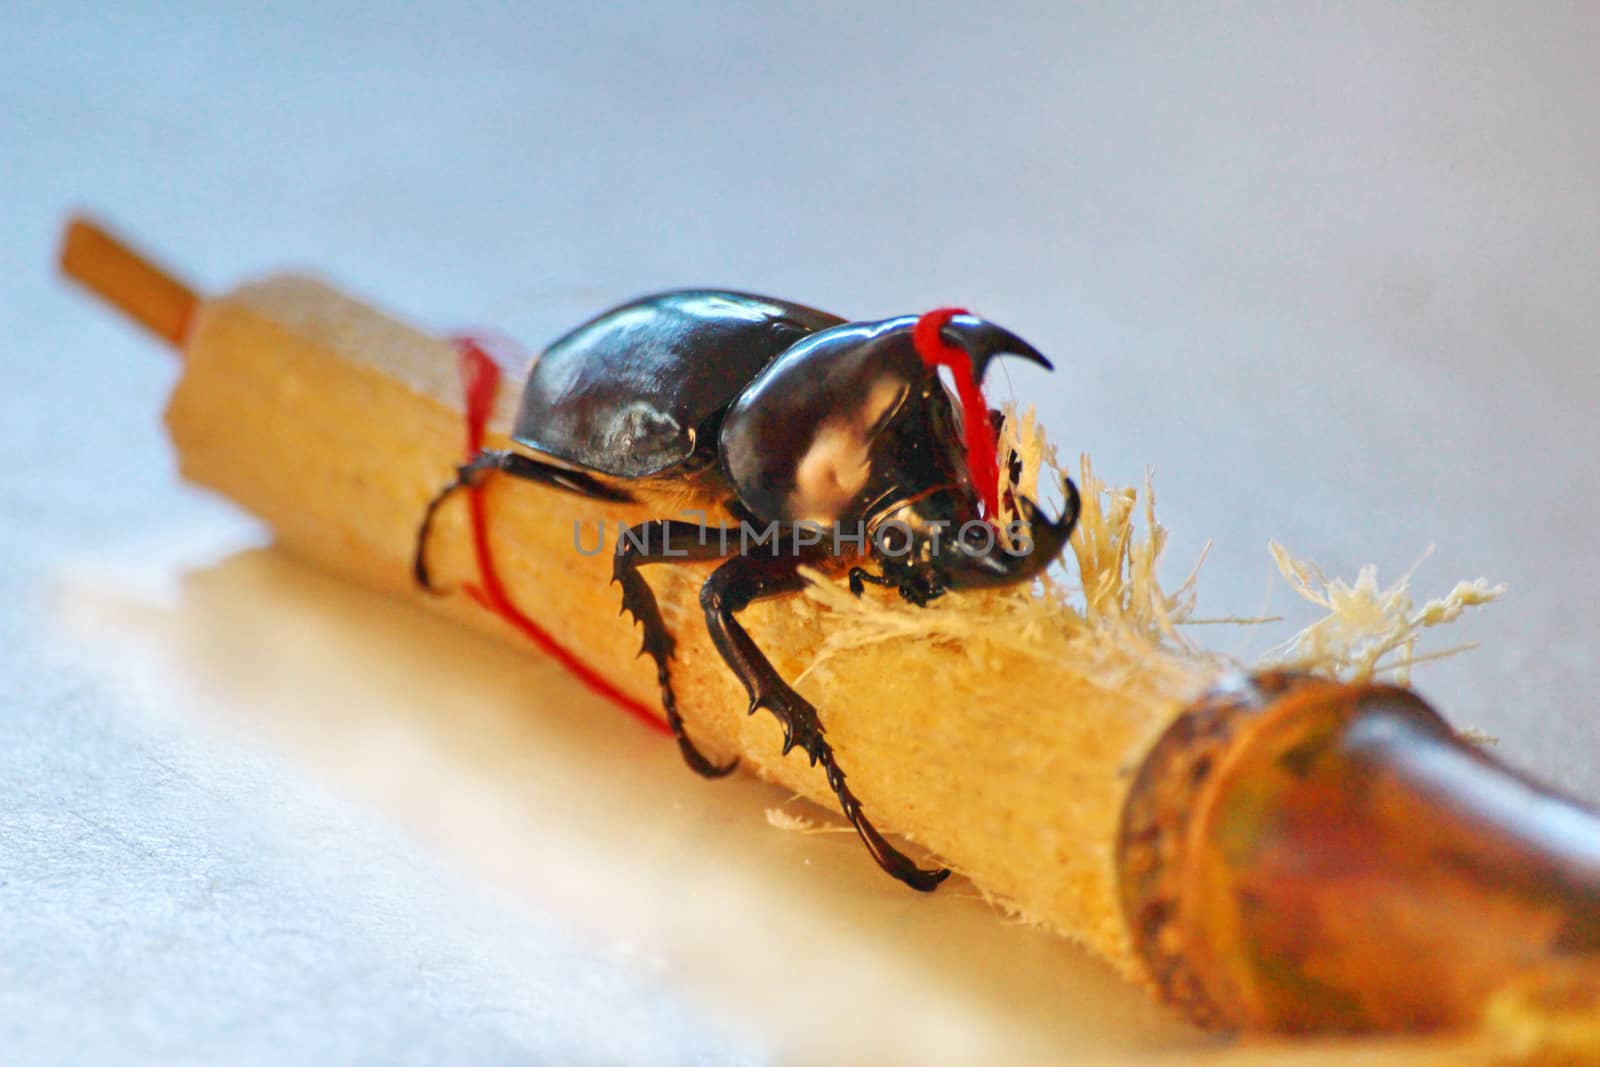 The stag beetle eating sugarcane.look so sweetness.